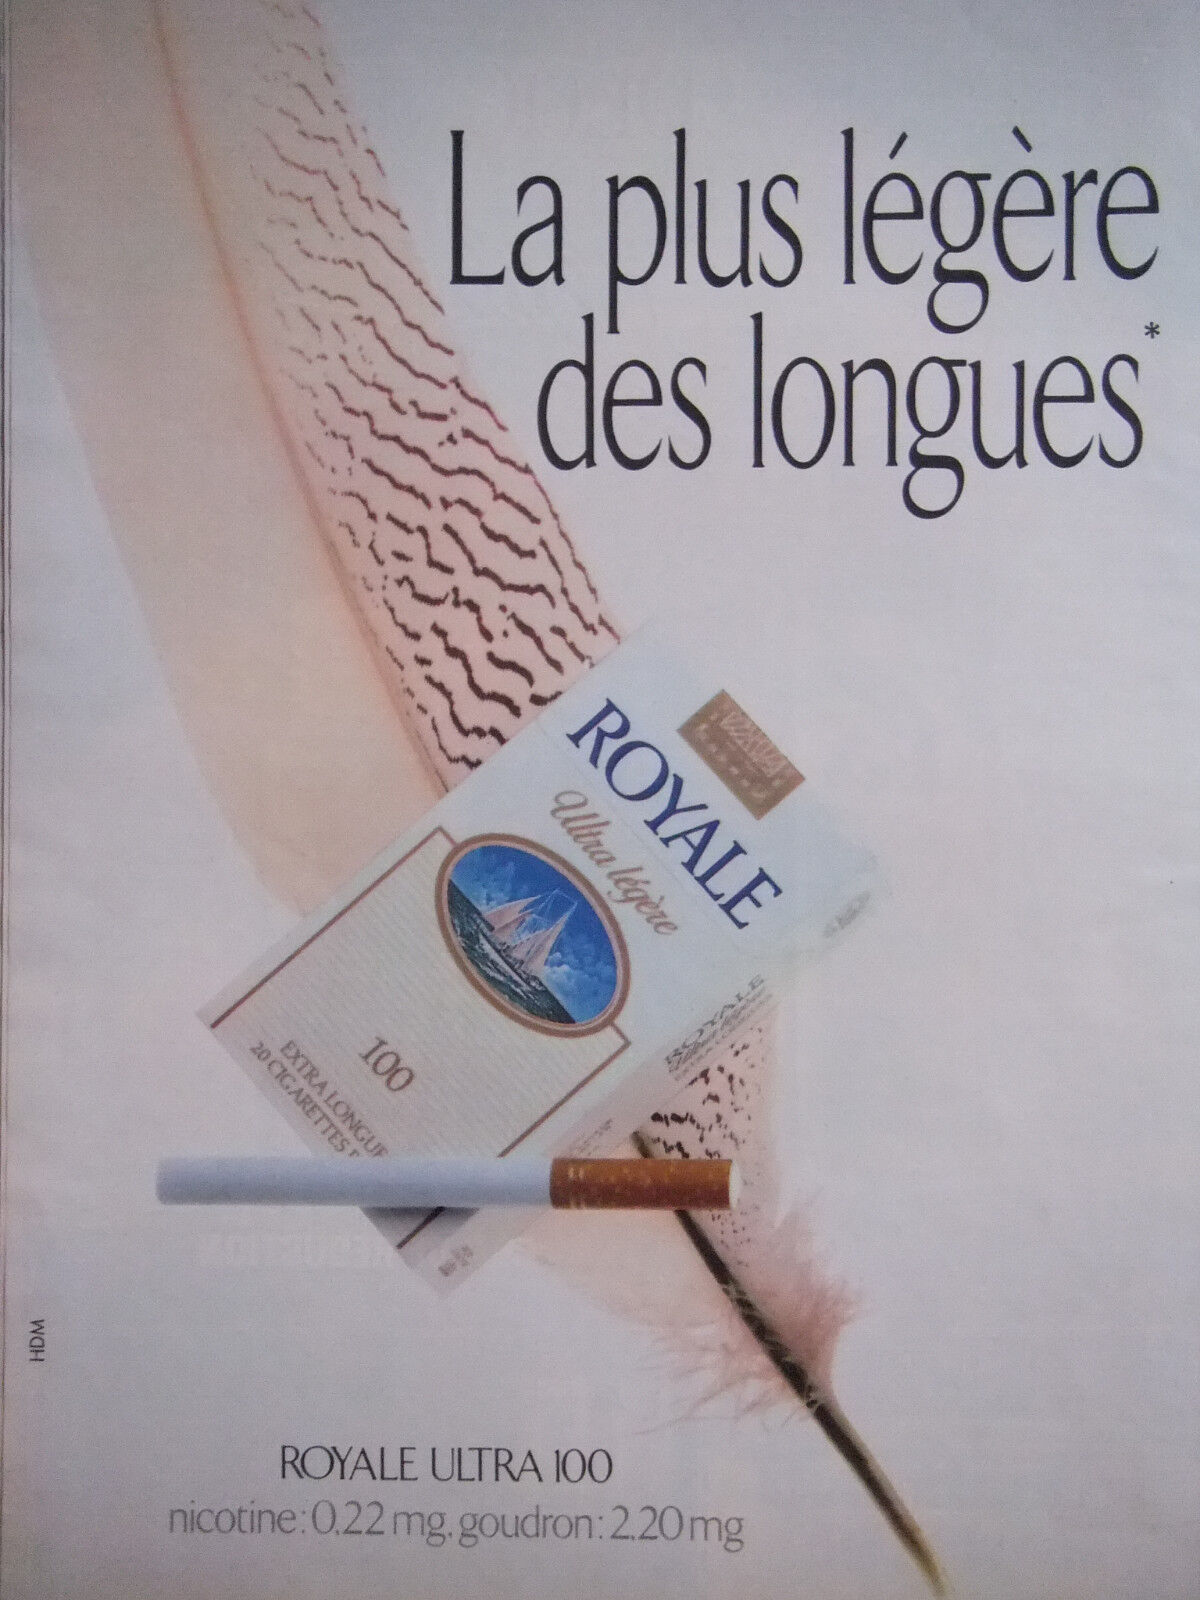 PUBLICITÉ 1991 ROYALE ULTRA 100 LA PLUS LÉGÈRE CIGARETTE - TABAC